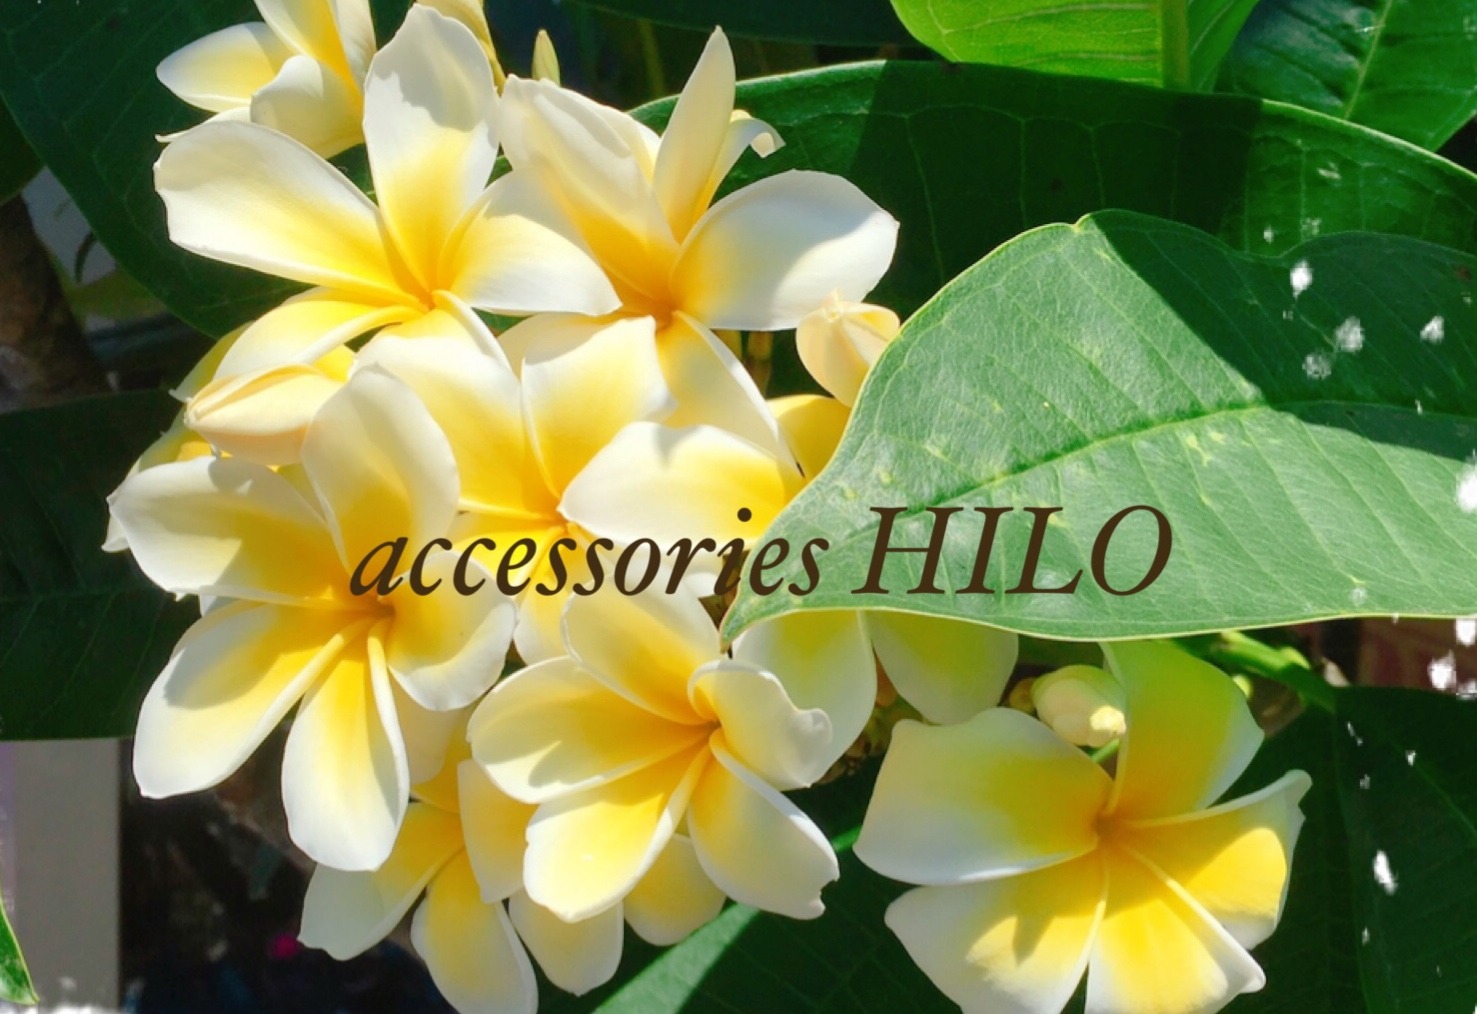 accessories HILO